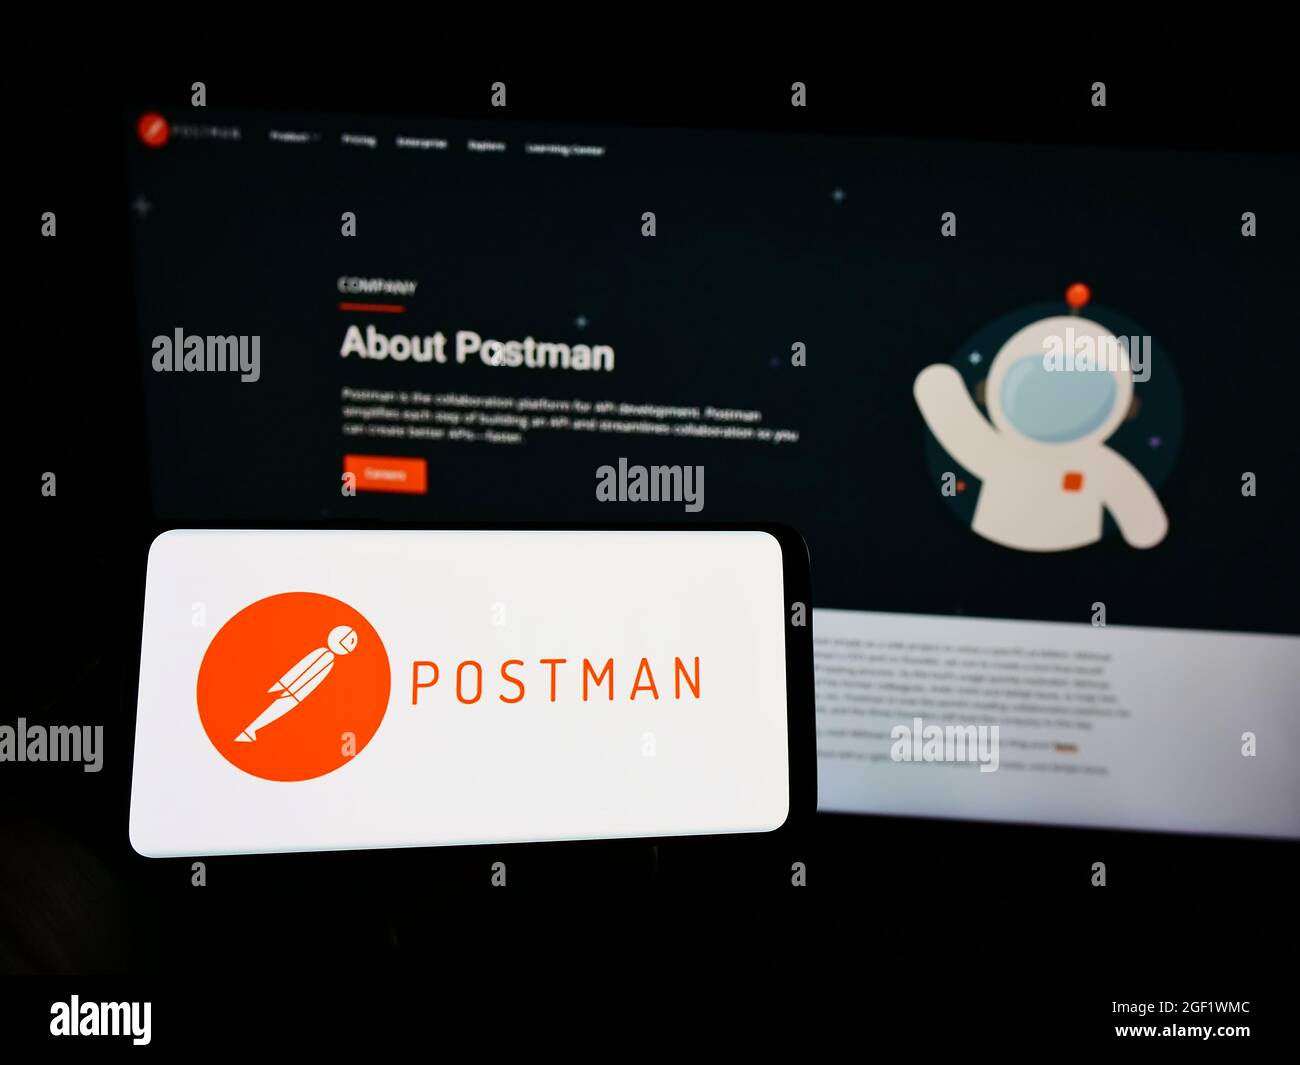 Persona che detiene il telefono cellulare con il logo della piattaforma di collaborazione statunitense Postman Inc. Sullo schermo di fronte alla pagina web. Mettere a fuoco sul display del telefono. Foto Stock